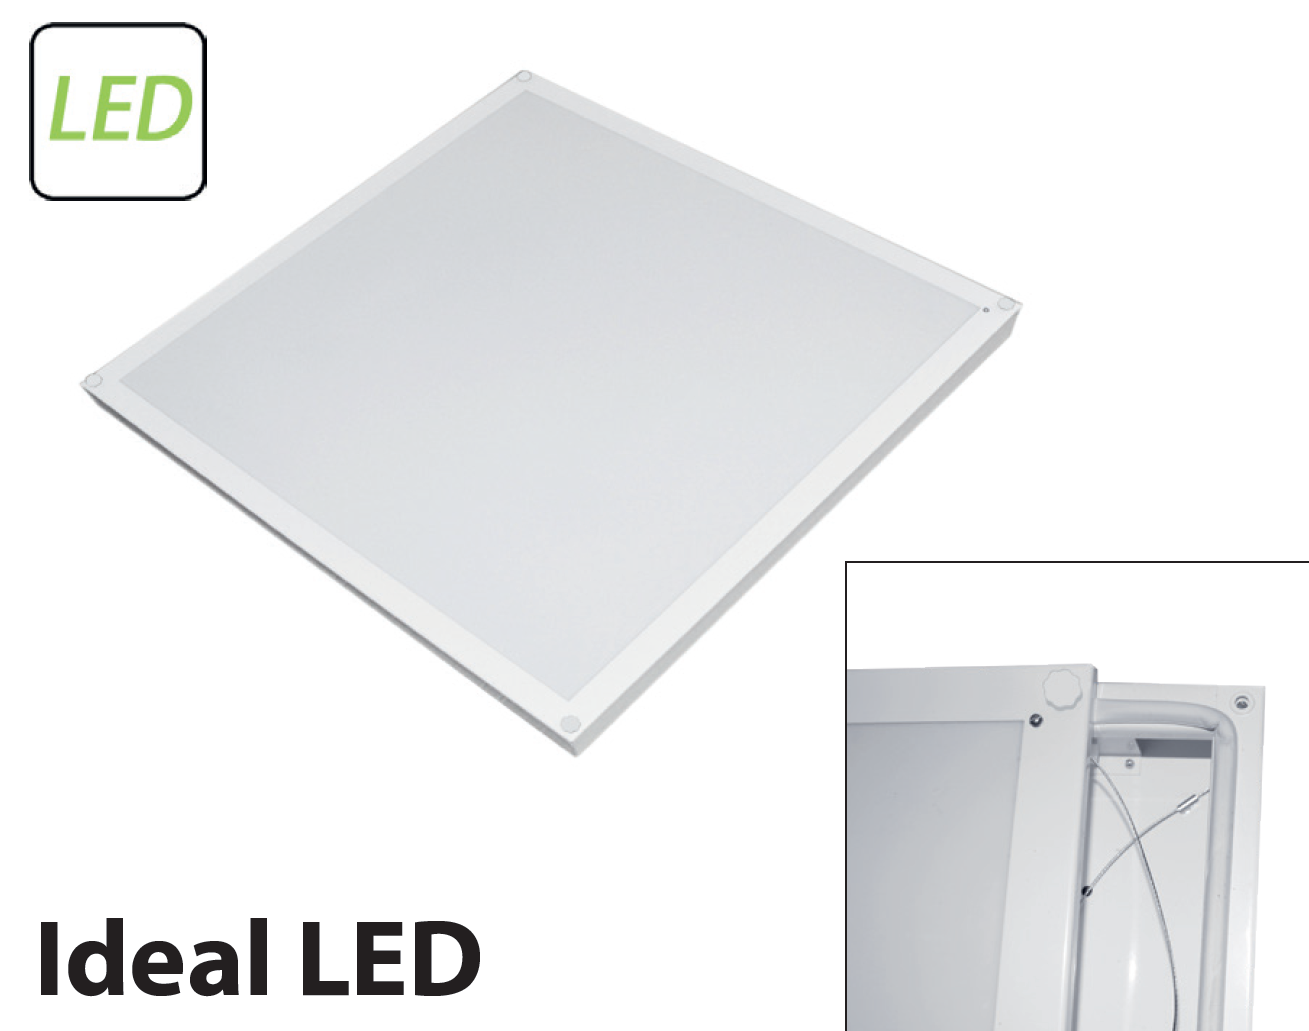        Ideal LED-01 () 0261818193-55 